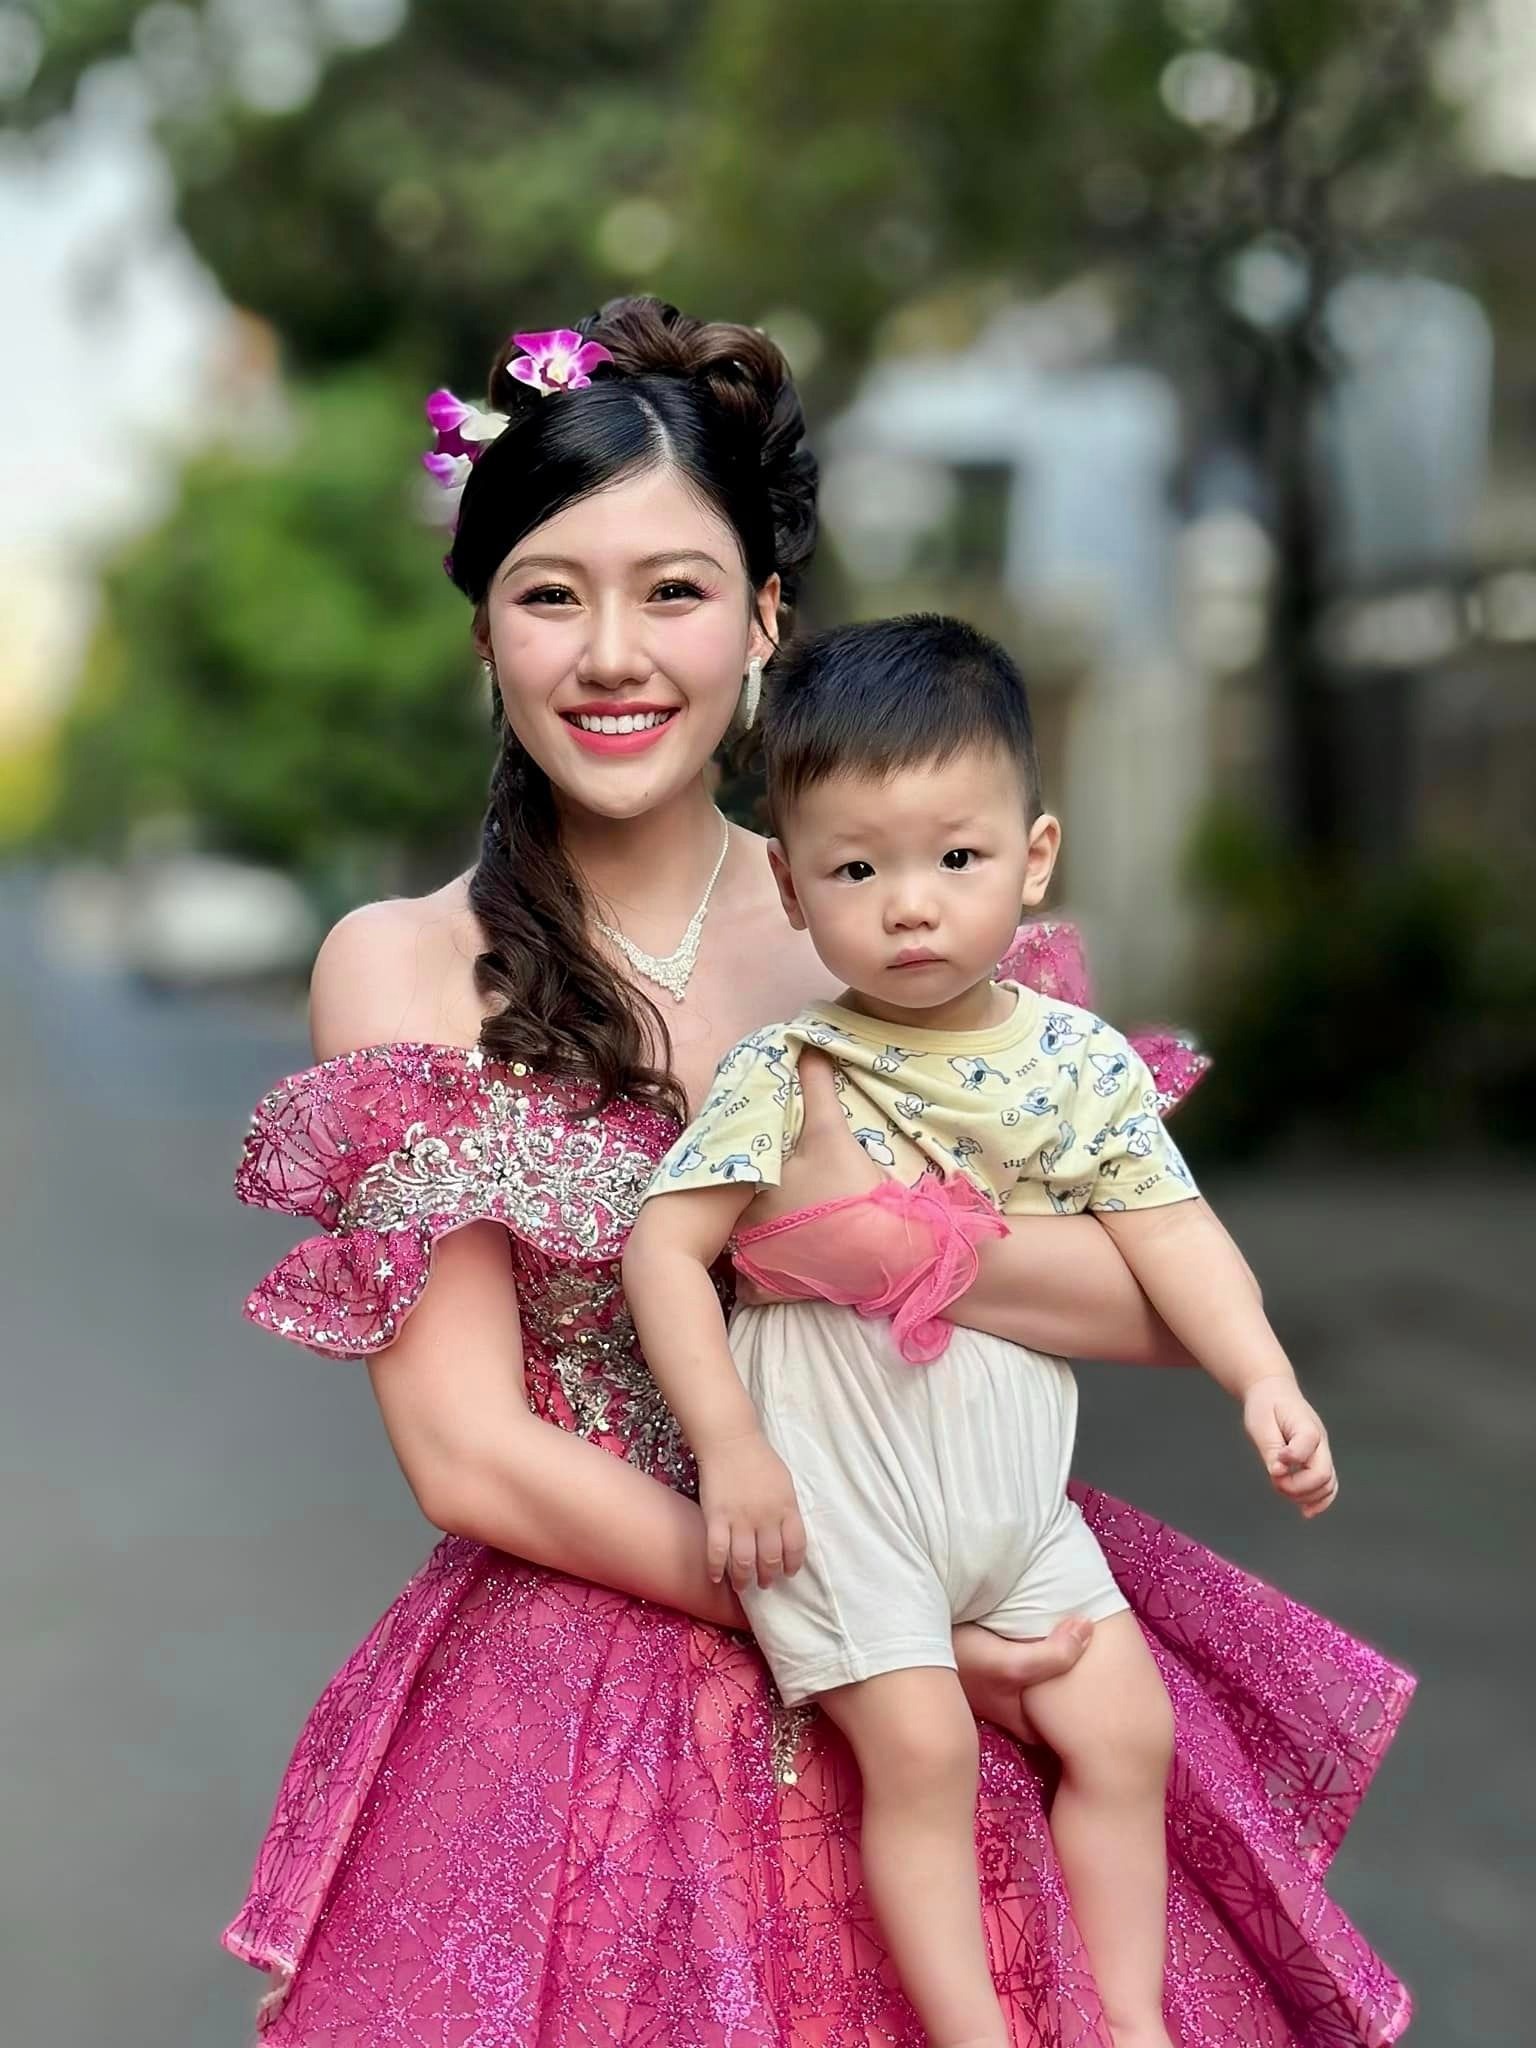 Loạt ảnh của em gái Trấn Thành làm cô dâu thập niên hồi đó bên hai con khiến netizen xôn xao - ảnh 2